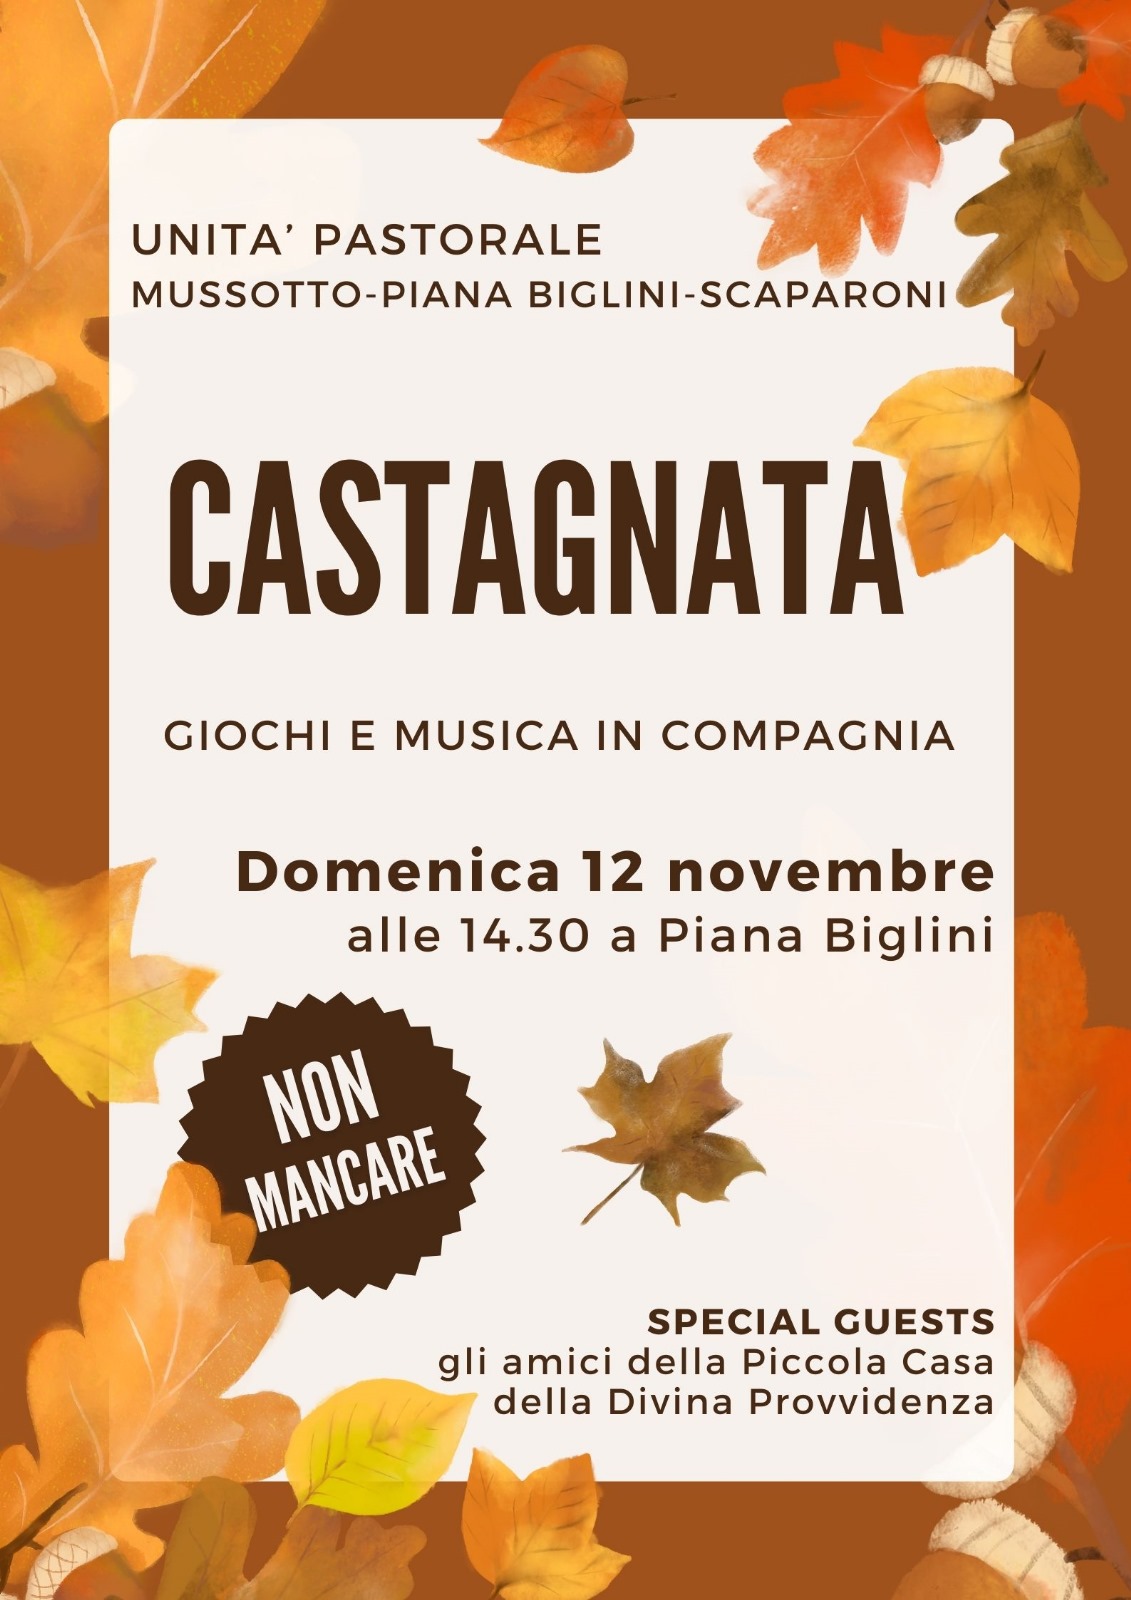 Castagnata a Piana Biglini